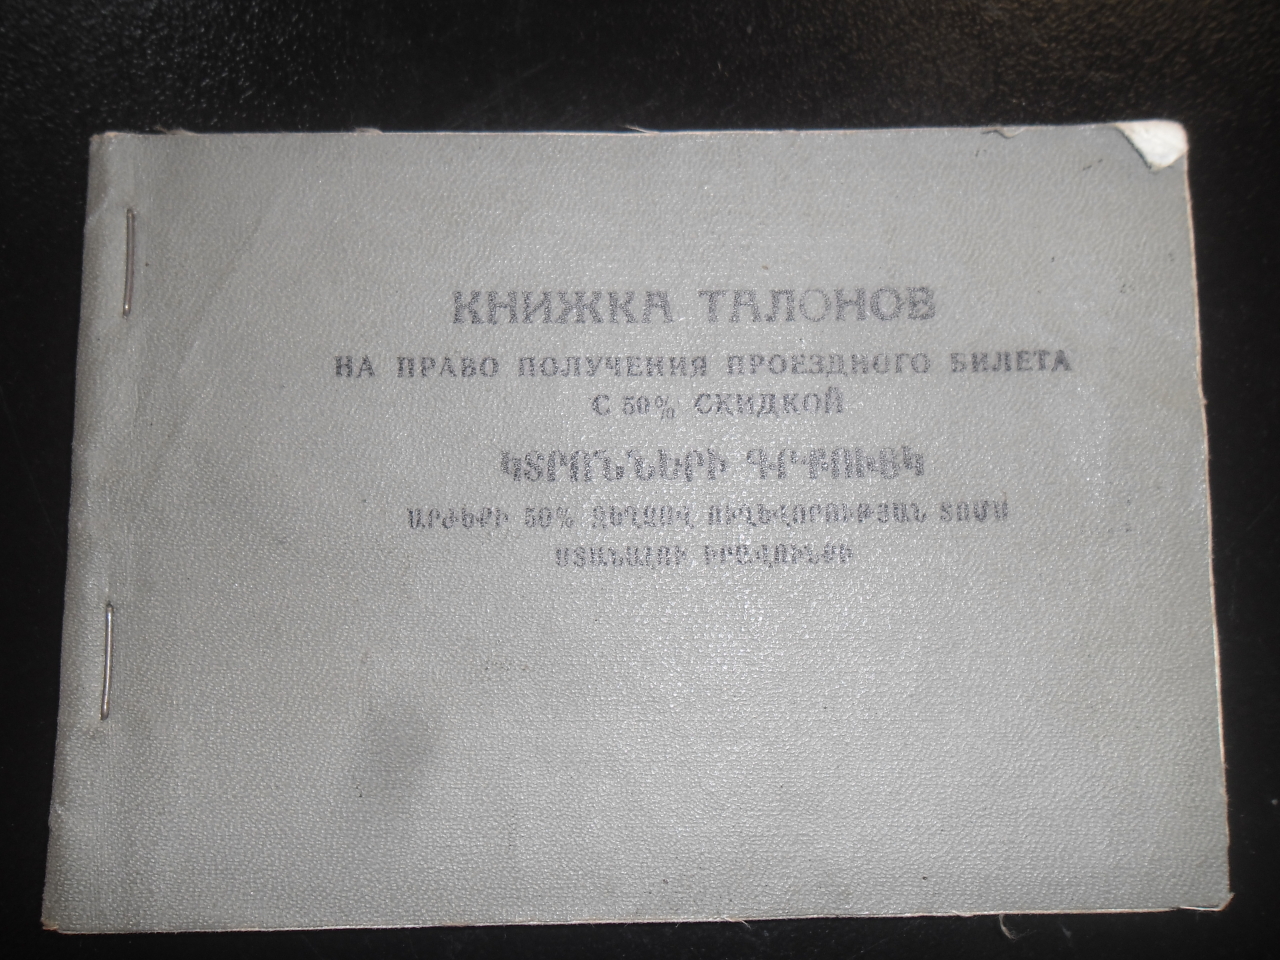 Կտրոնների գրքույկ՝  Վոլոդյա Թեմուրի Խաչիկյանի (Հայրենական պատերազմի մասնակից)  